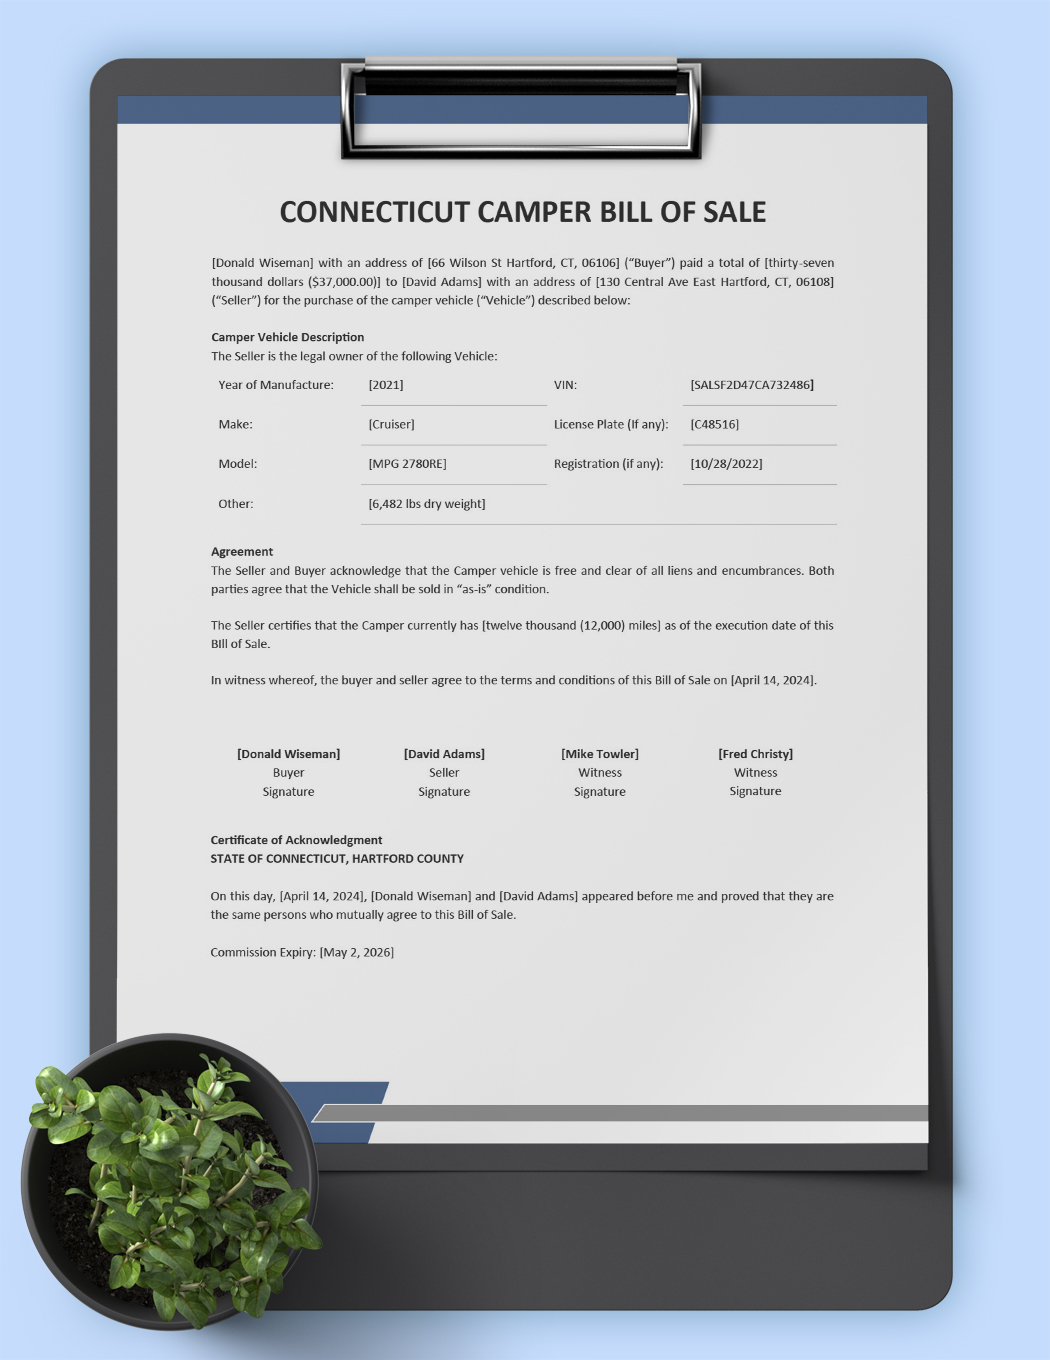 Connecticut Camper Bill of Sale Template